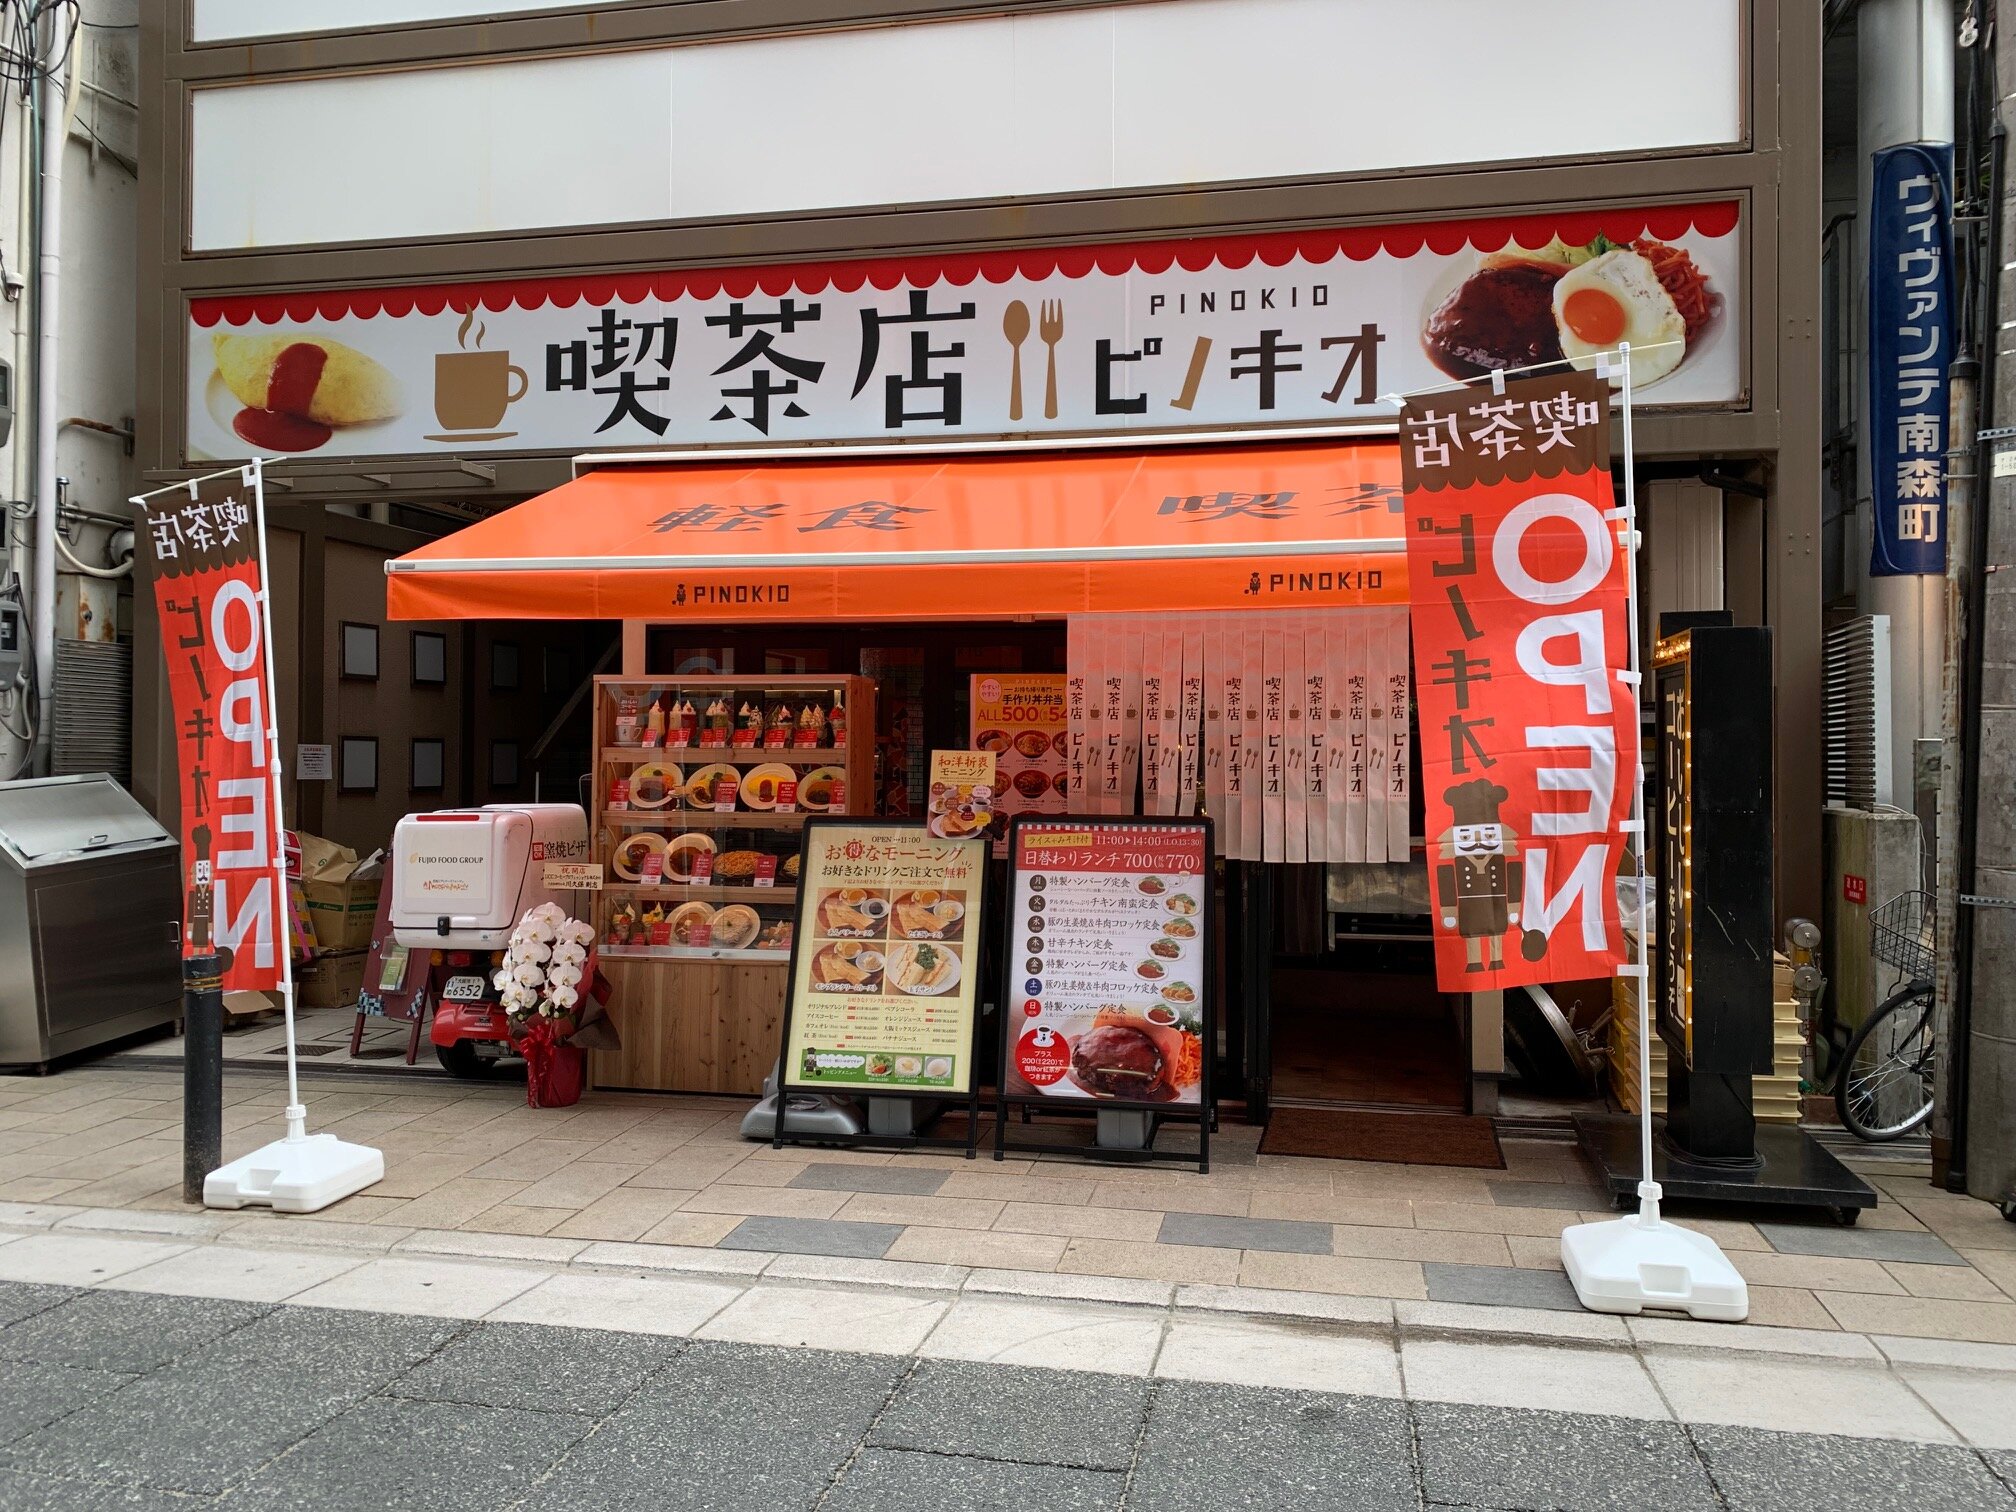 ピノキオ大阪天満宮前店がオープンしました